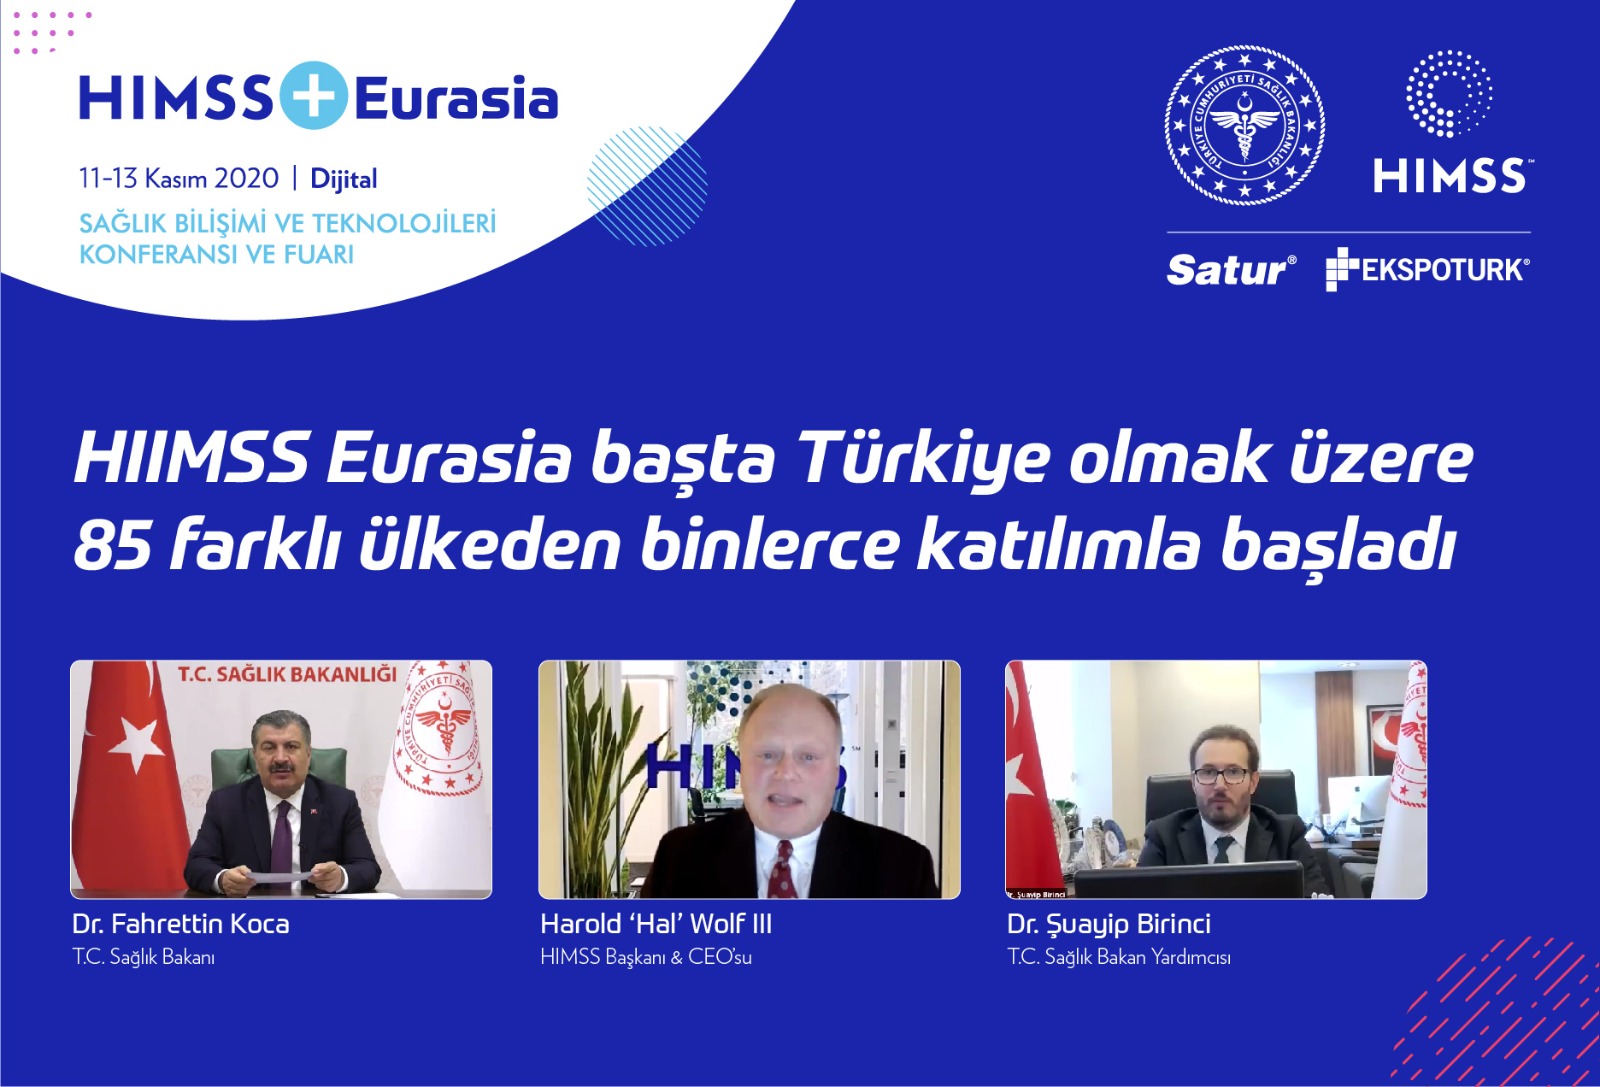 HIMSS + Eurasia  Sağlık Bilişimi Ve Teknolojileri Konferansı ve Fuarı Açıldı